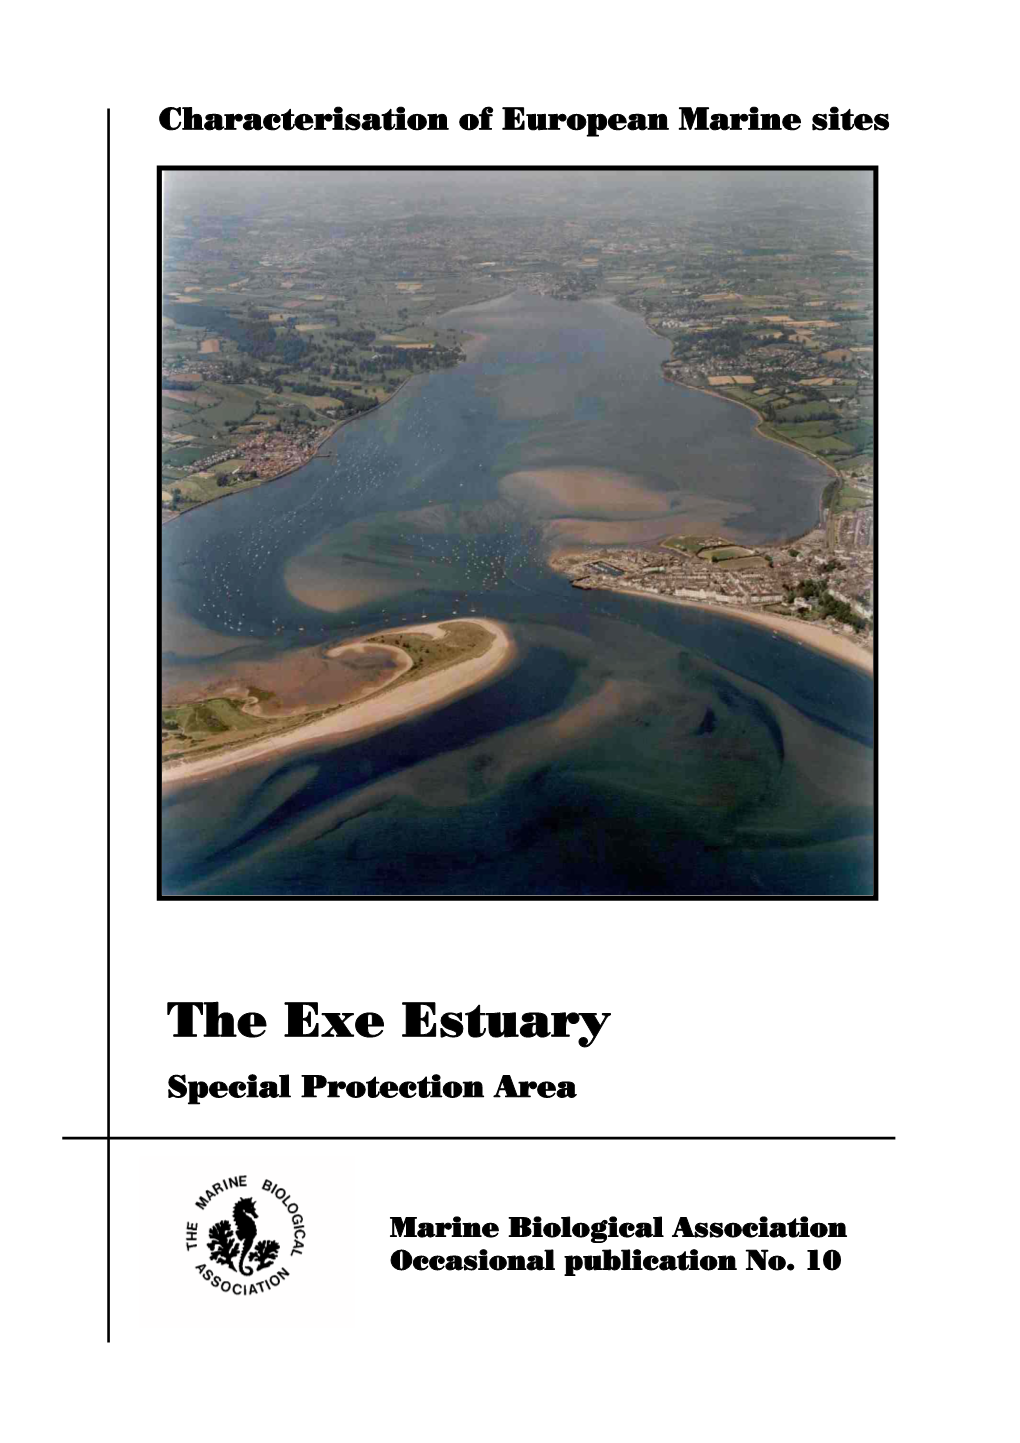 The Exe Estuary